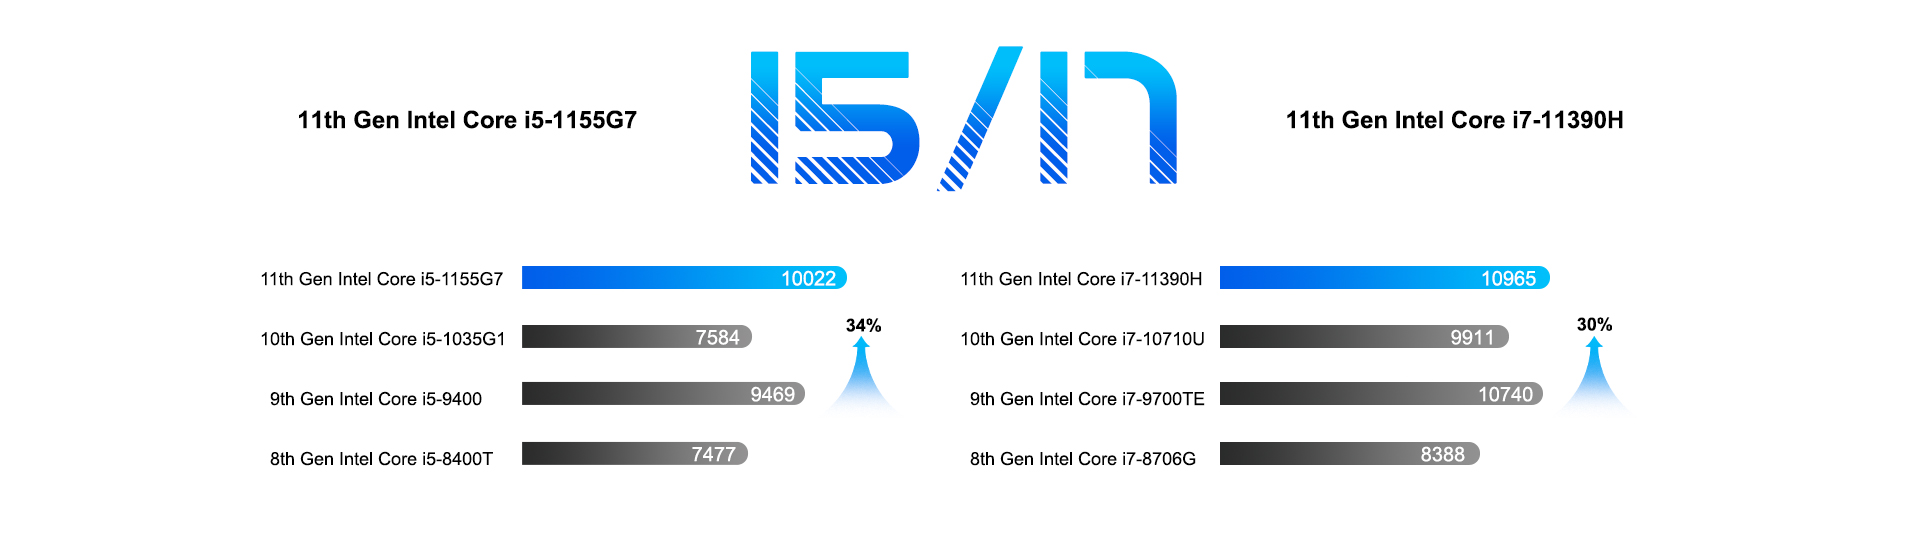 Intel Core i5 Vs i7